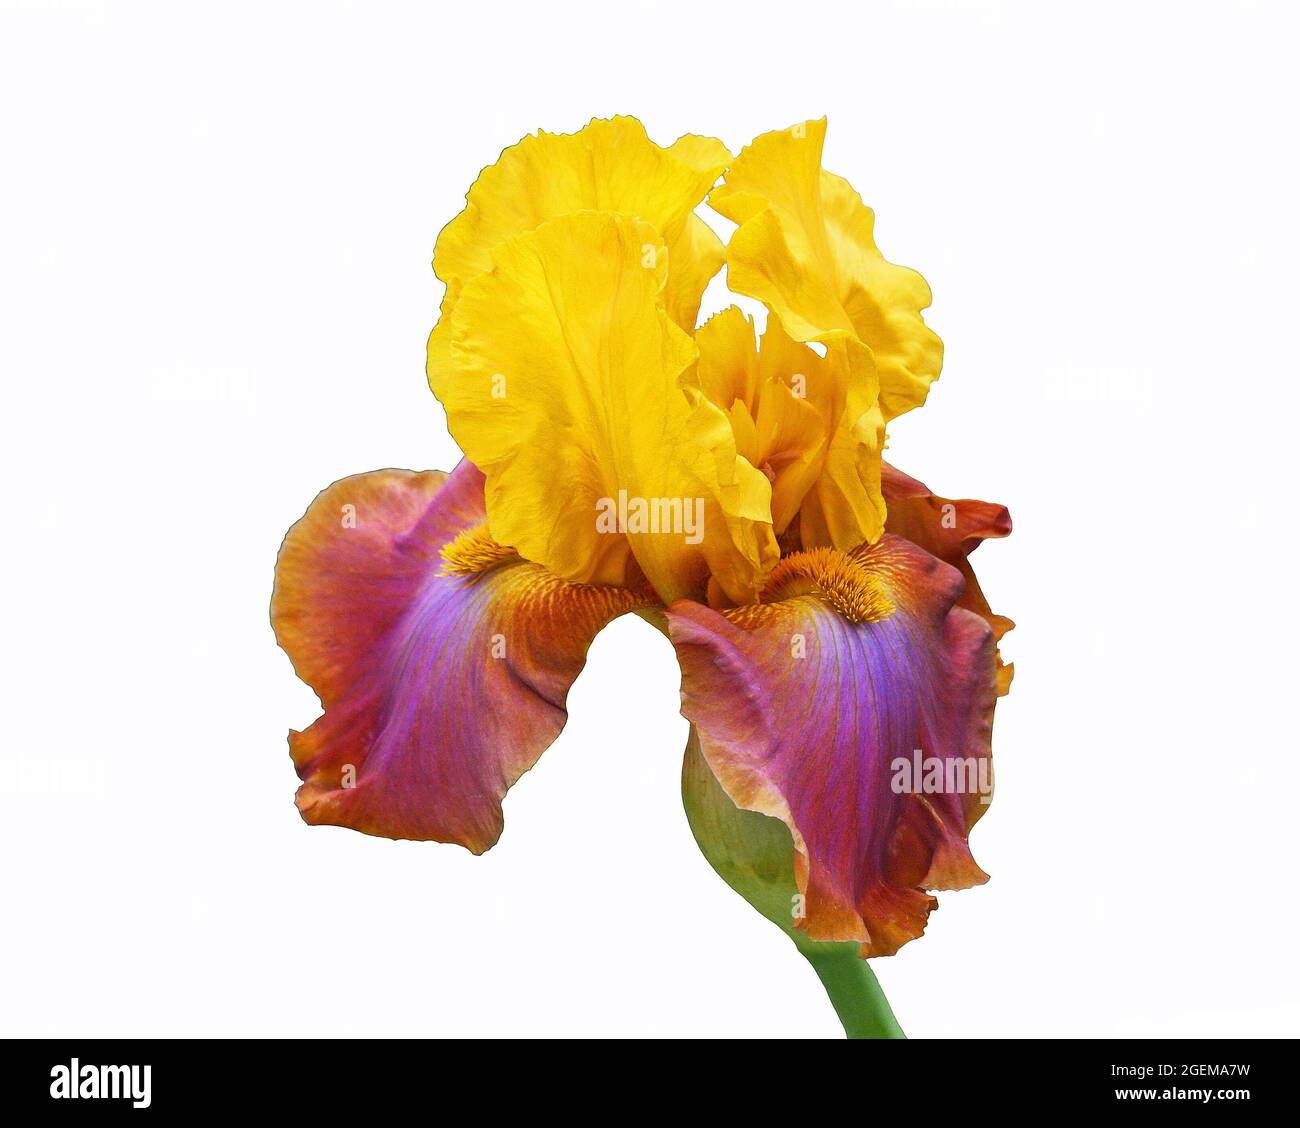 Iris in gelb und lila - isoliert auf weißem Hintergrund Stockfoto